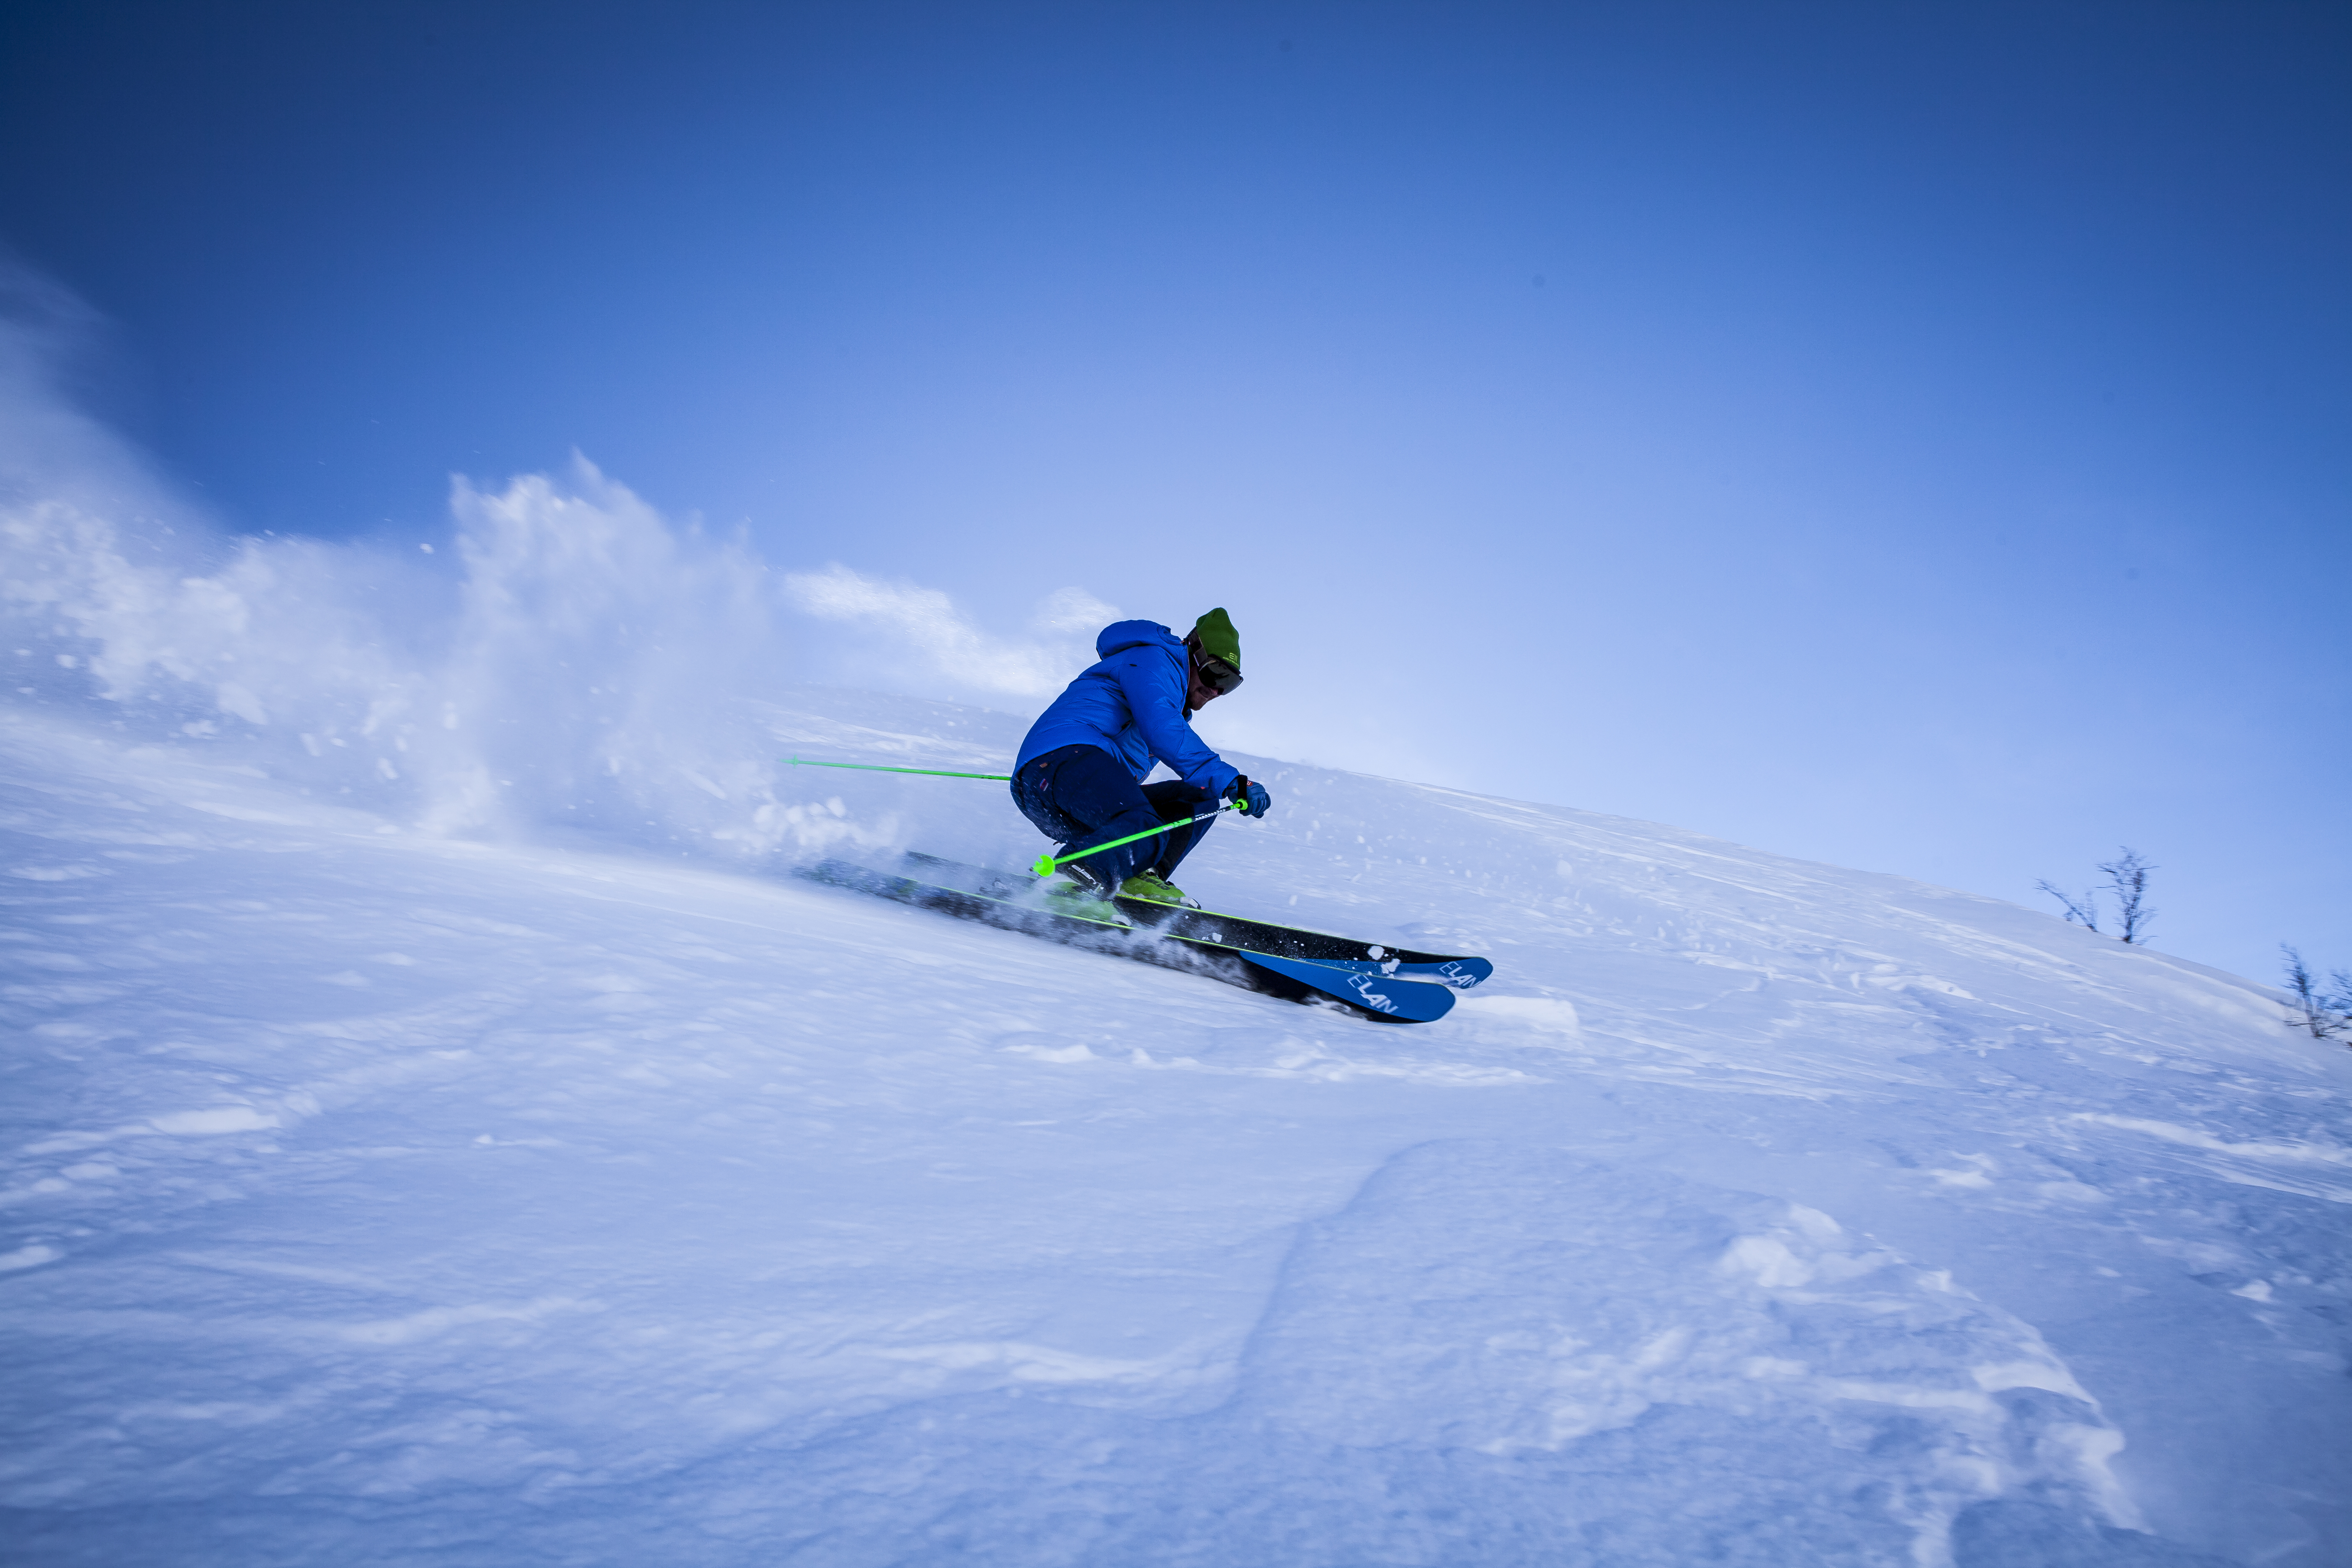 Partez à la découverte de la station de ski La Bresse Hohneck